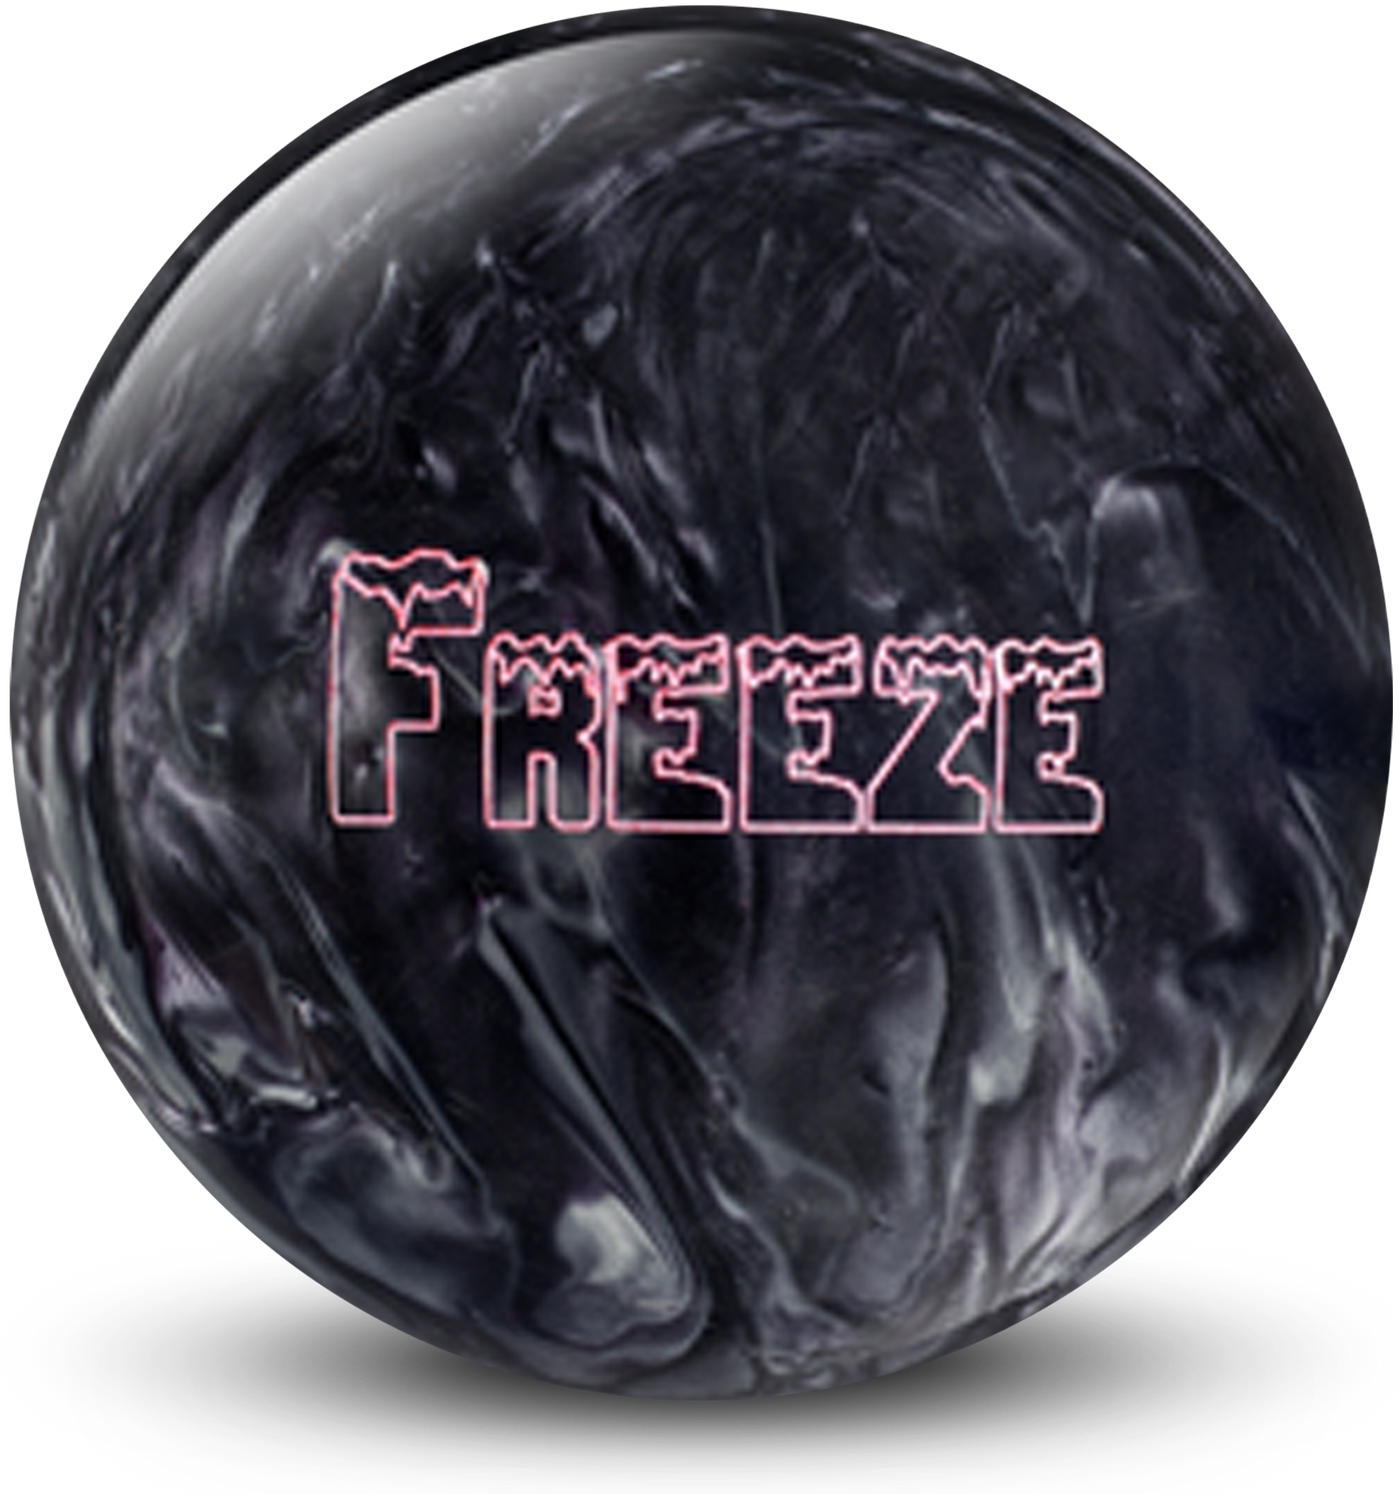 Freeze Black/Silver Bowling Ball